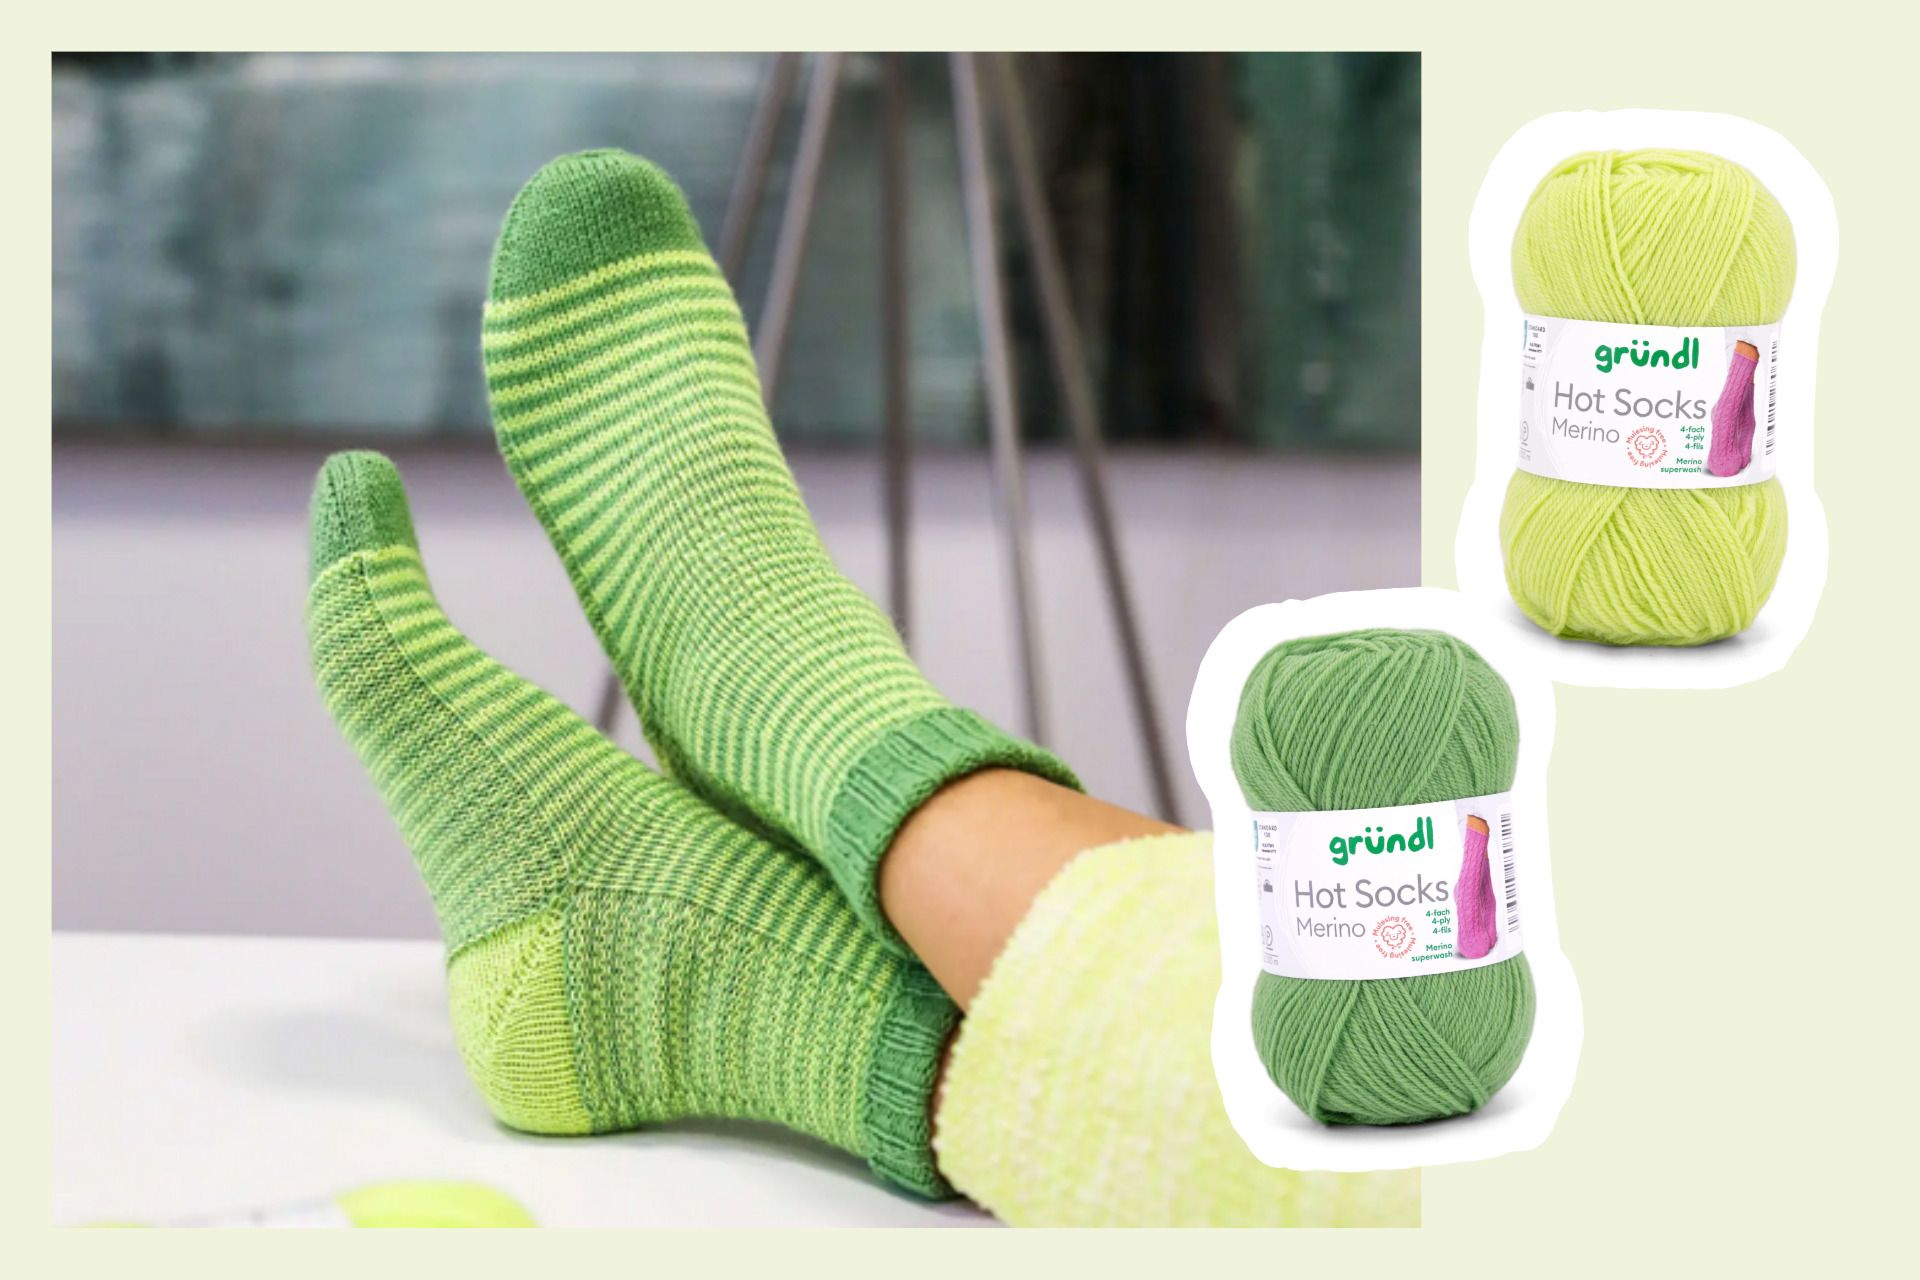 Gründl spendet bis zu 1 € pro Knäuel an die Aktion "Grüne Socke"